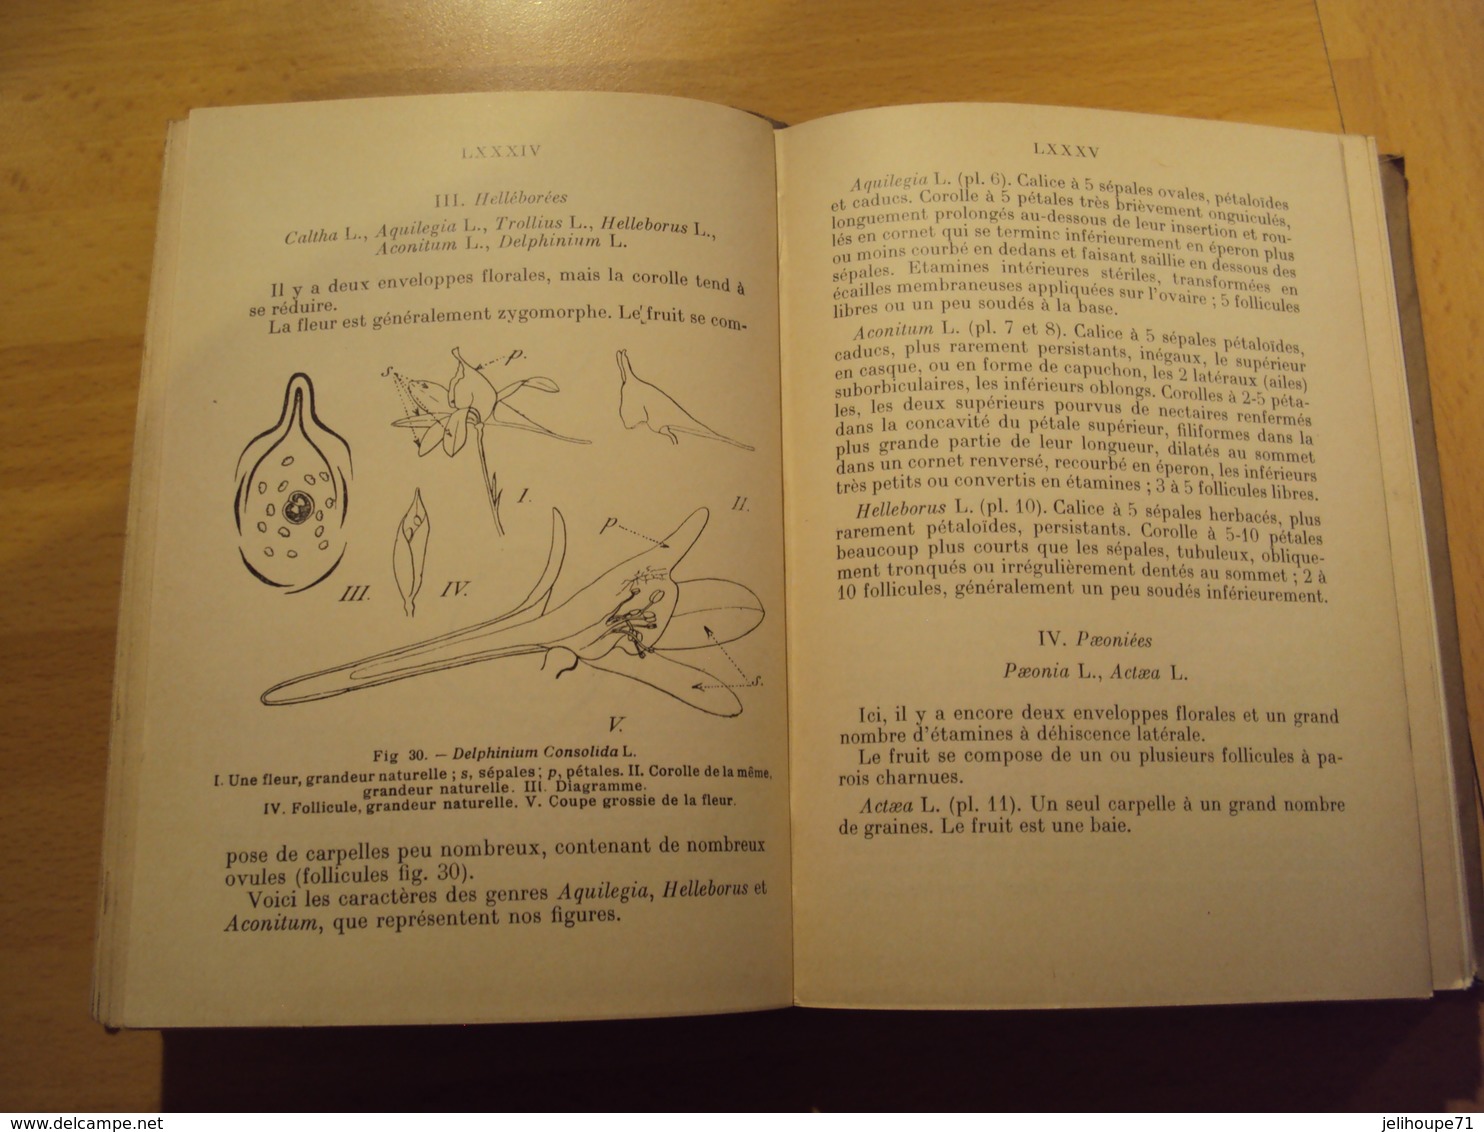 Encyclopédie Pratique Du Naturaliste - Les Fleurs Des Bois - TOME II 1936 - Encyclopédies